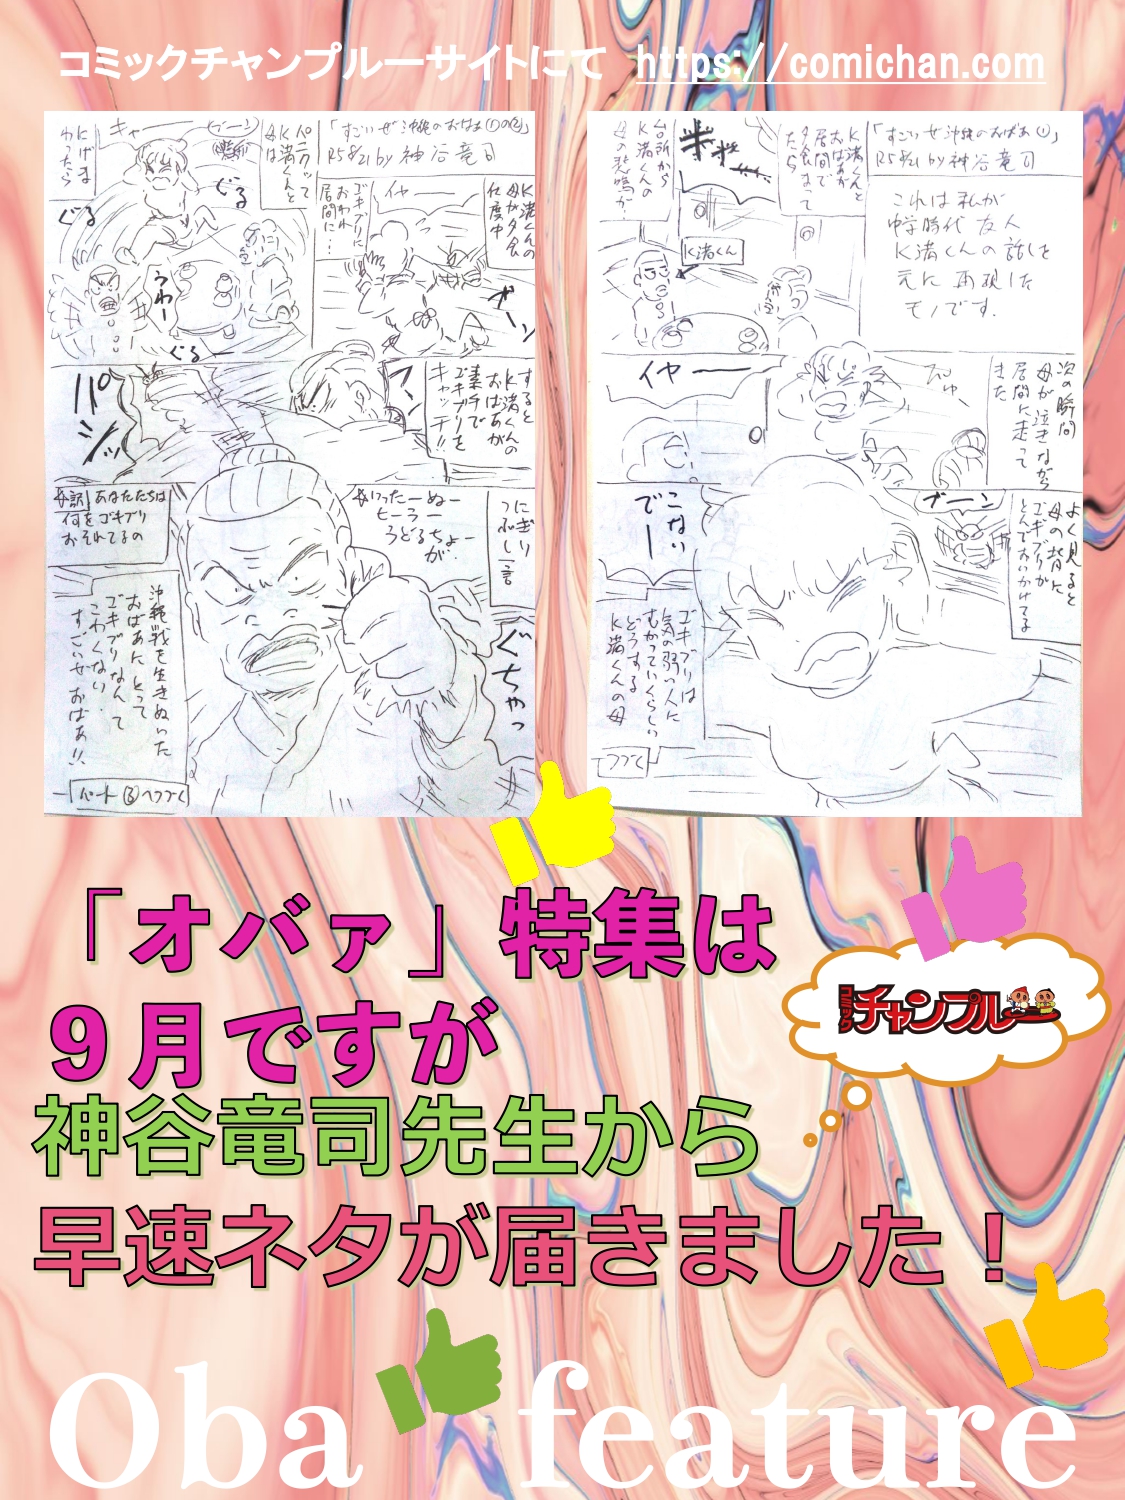 「オバァ」特集は９月ですが　神谷竜司先生から早速ネタが届きました！　